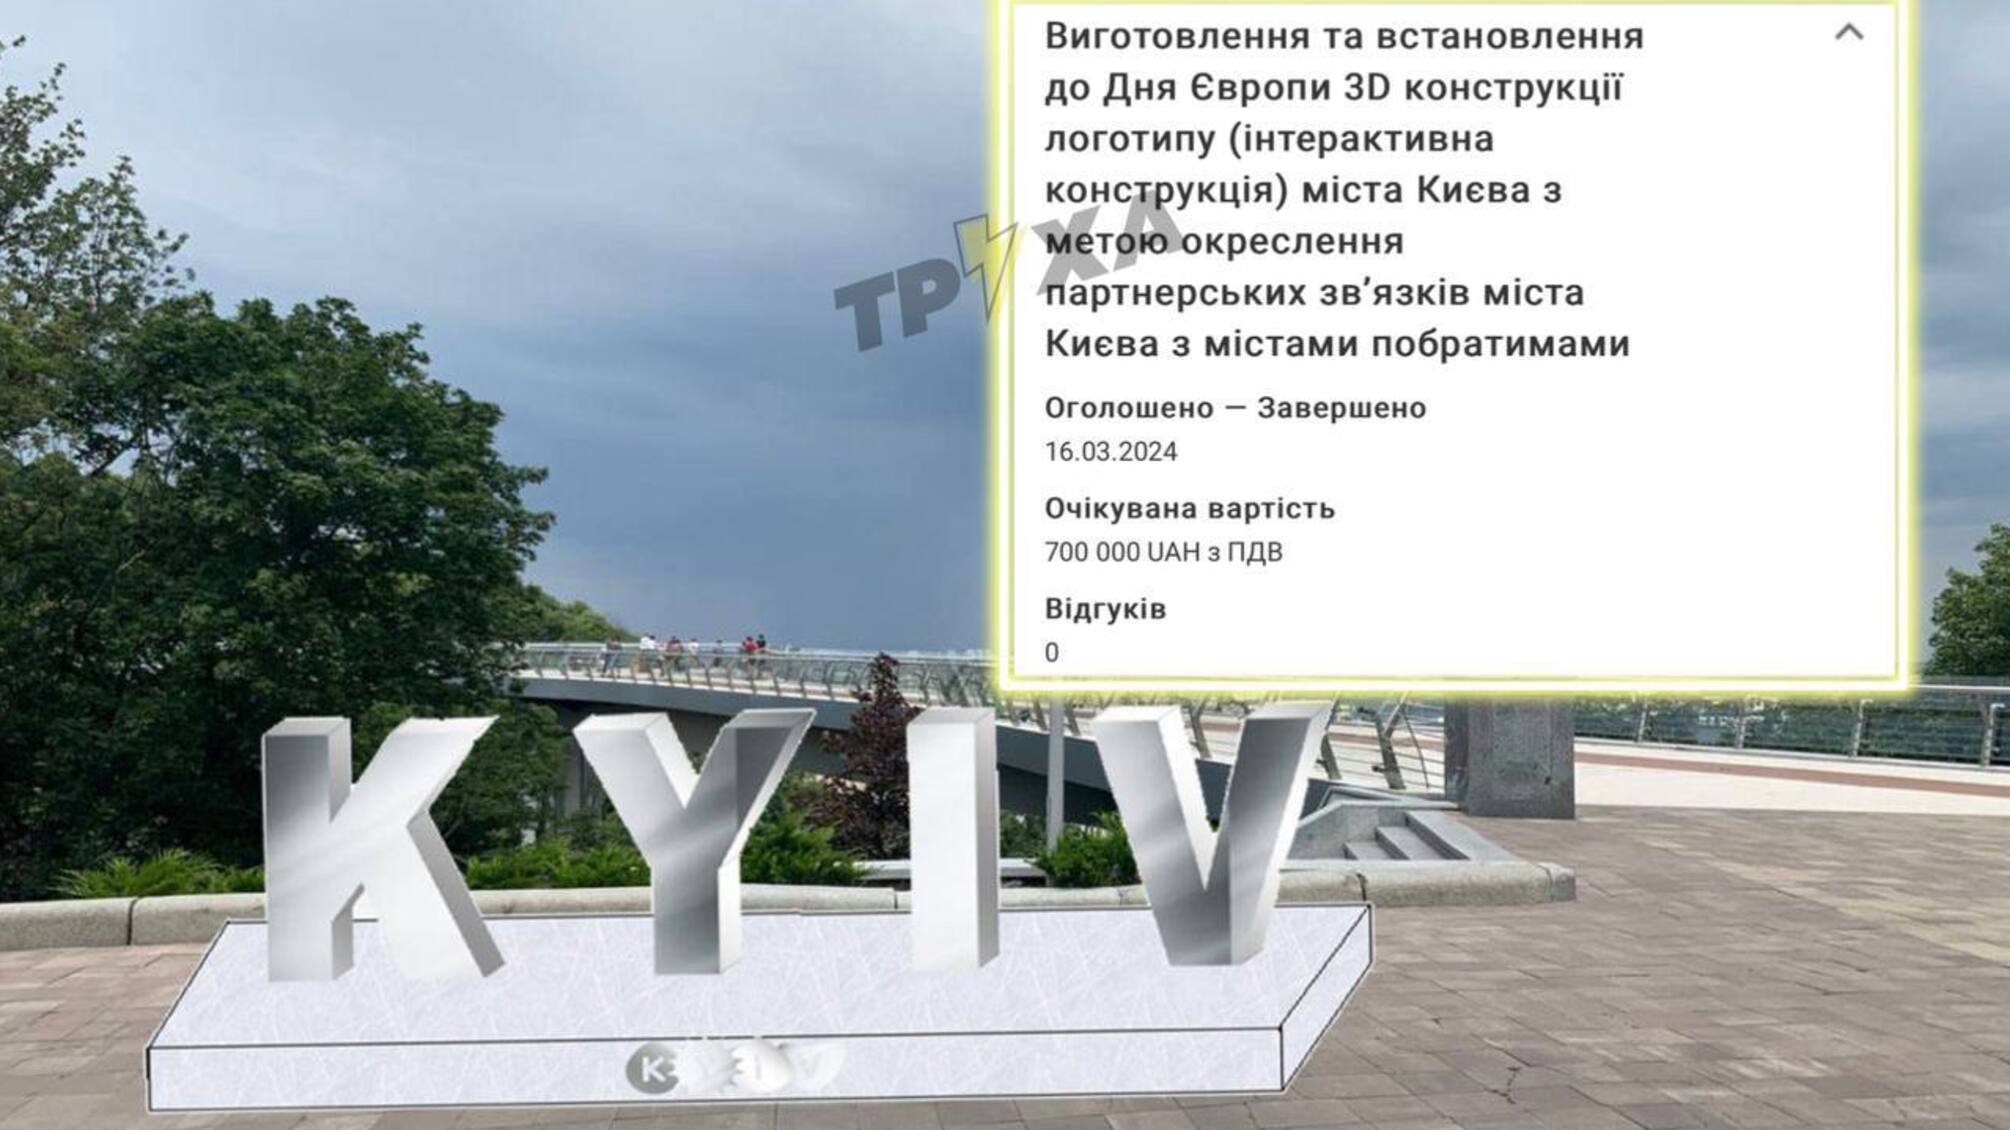 У Києві планують встановити 3D конструкцію логотипу за 700 тис грн